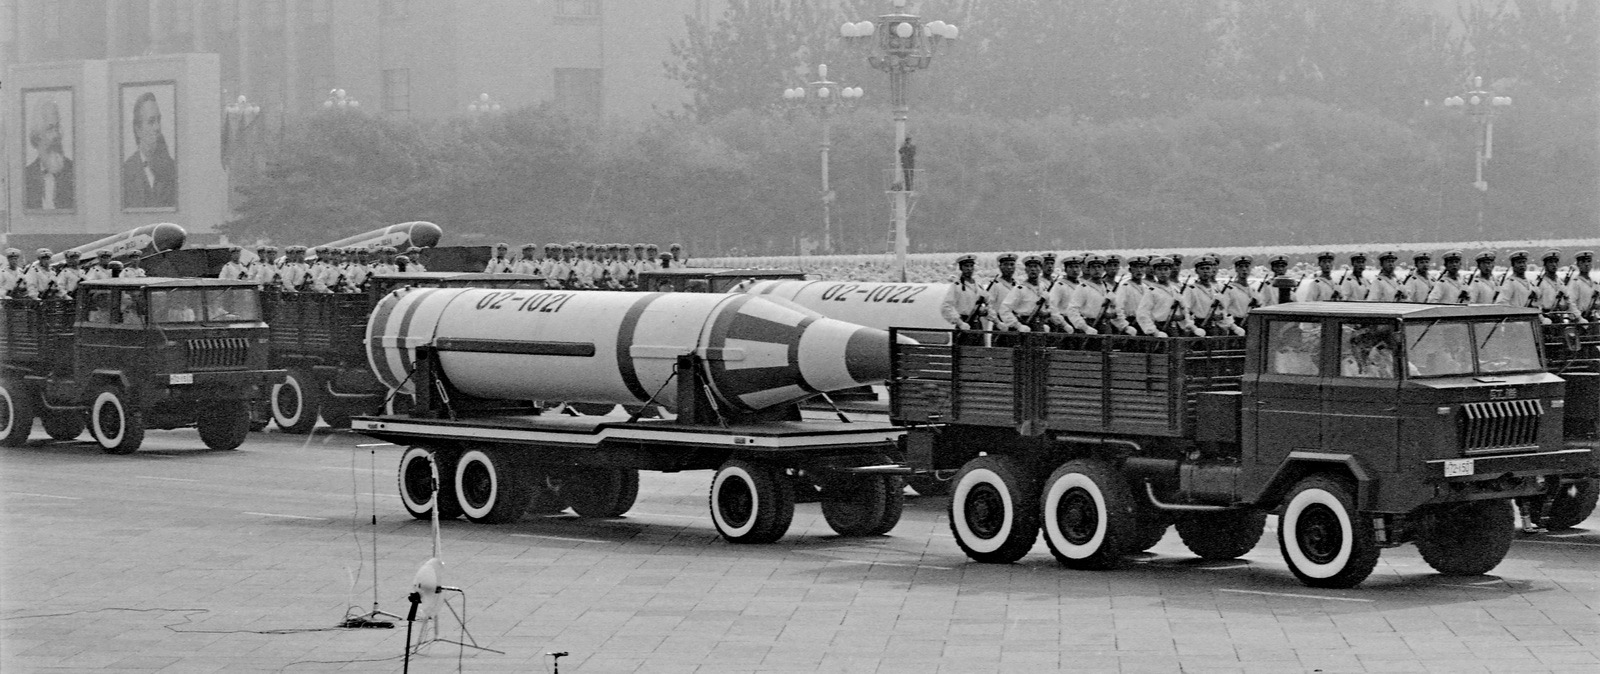 1984年，中华人民共和国国庆35周年阅兵在北京举行。图为海军导弹方队装载着潜艇水下发射的潜地导弹通过天安门。 乔天富摄